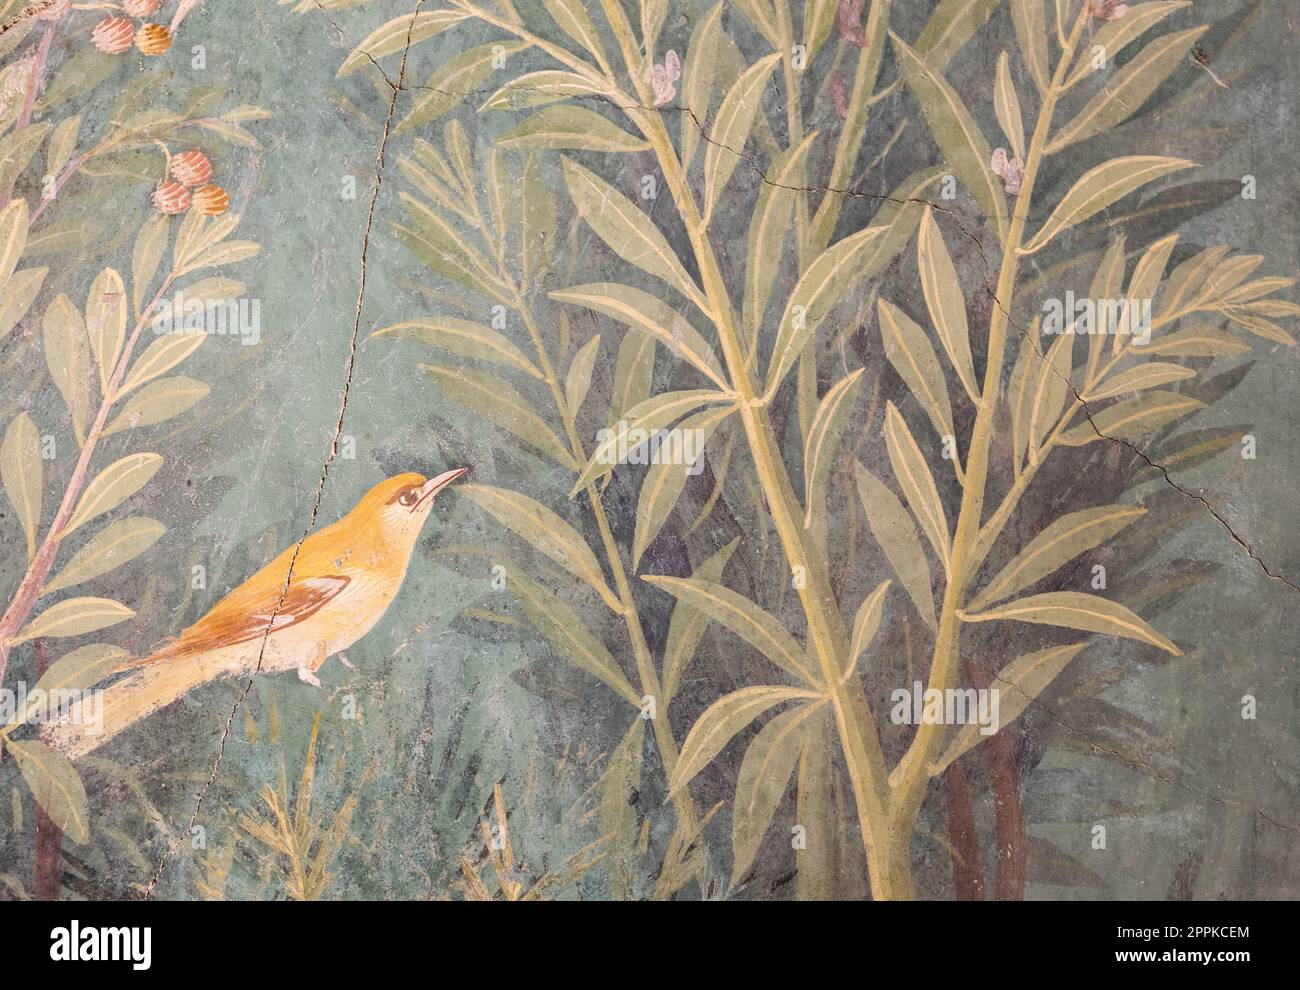 Italie, Pompéi - intérieur de maison romaine de luxe, détail de fresque avec oiseau dans un jardin Banque D'Images